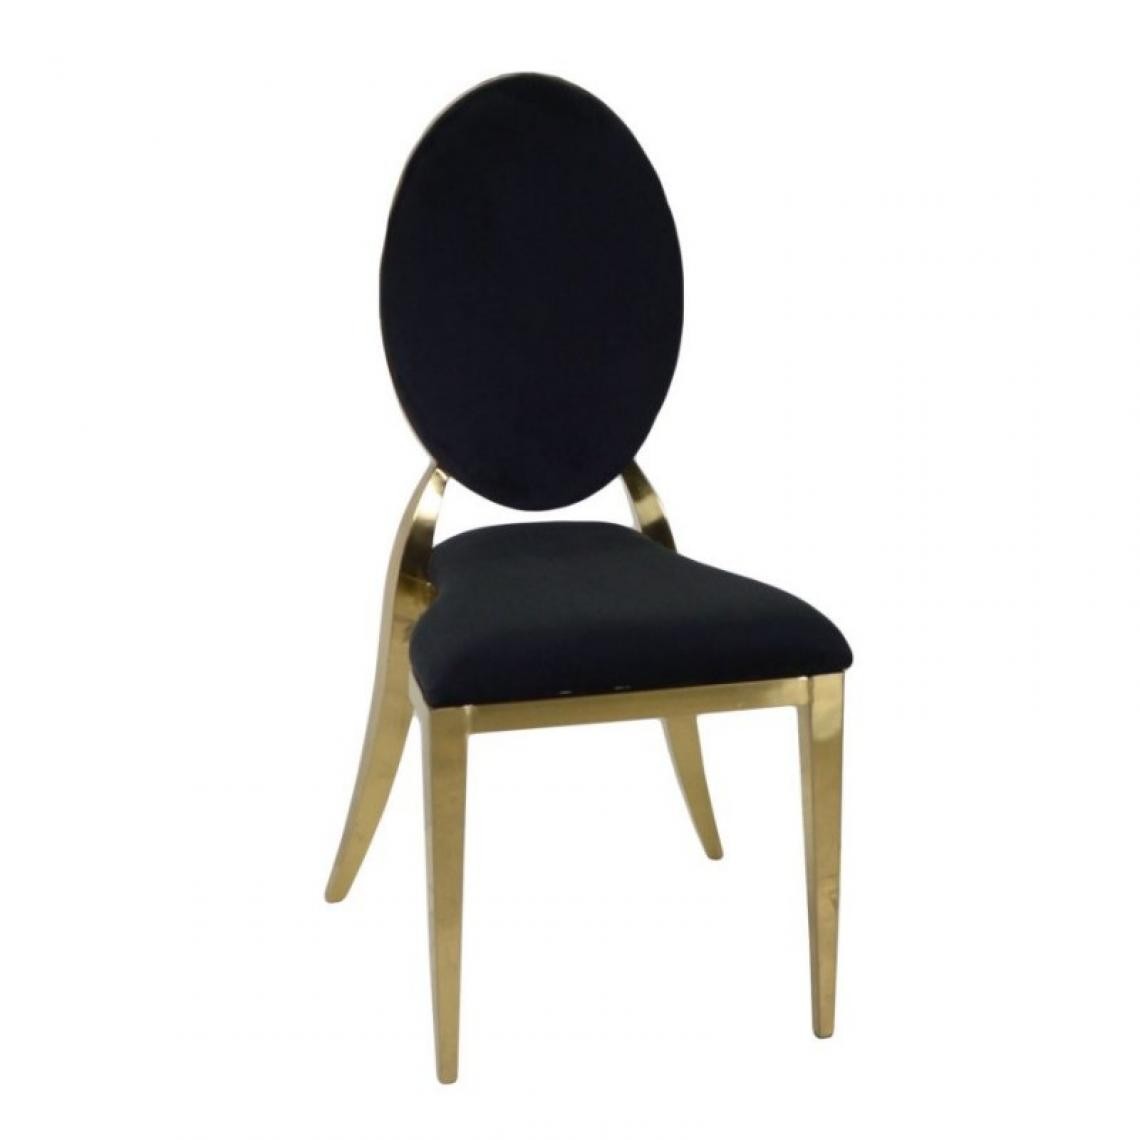 Webmarketpoint - Chaise de salon baroque métal velours or noir cm 43 x 47 x h93 - Chaises